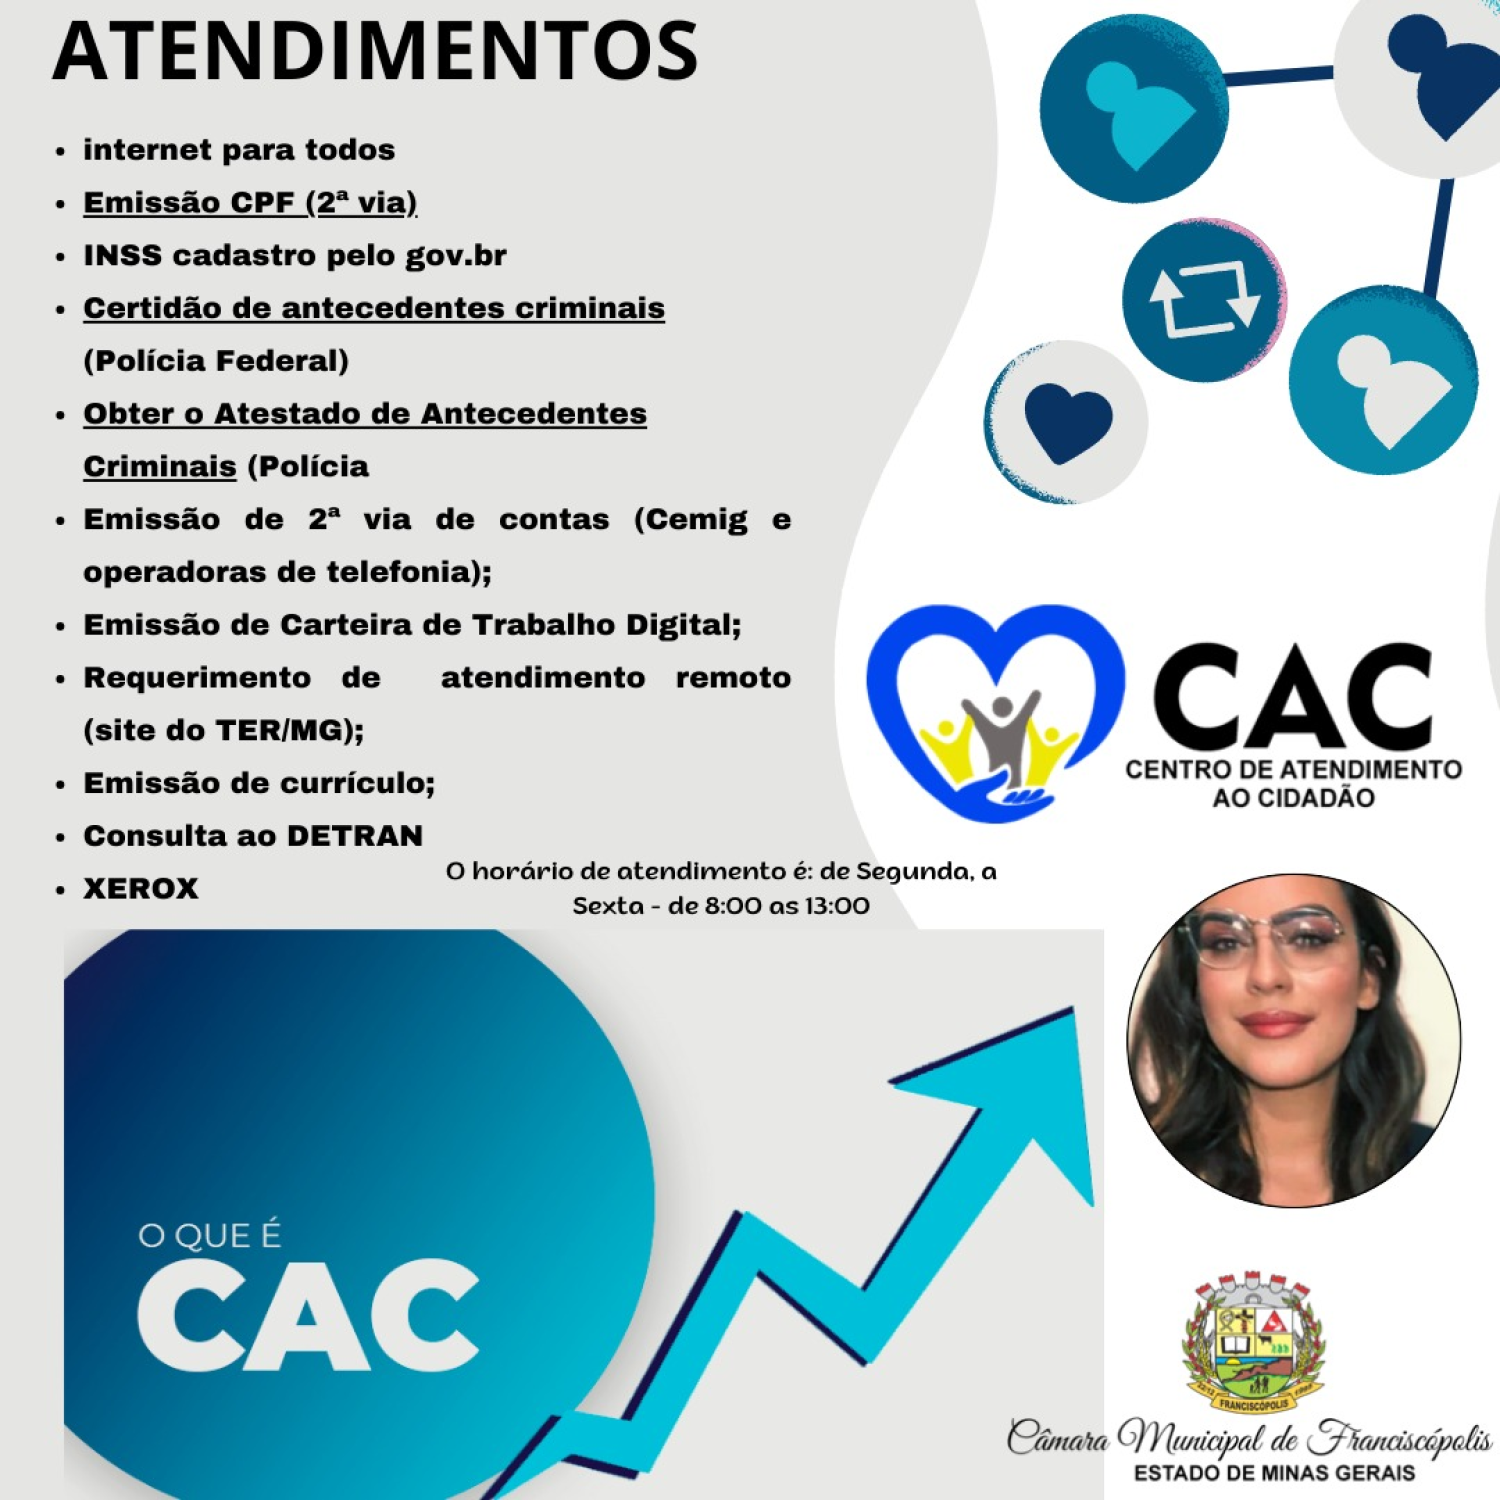 CAC - CENTRO DE ATENDIMENTO AO CIDADÃO